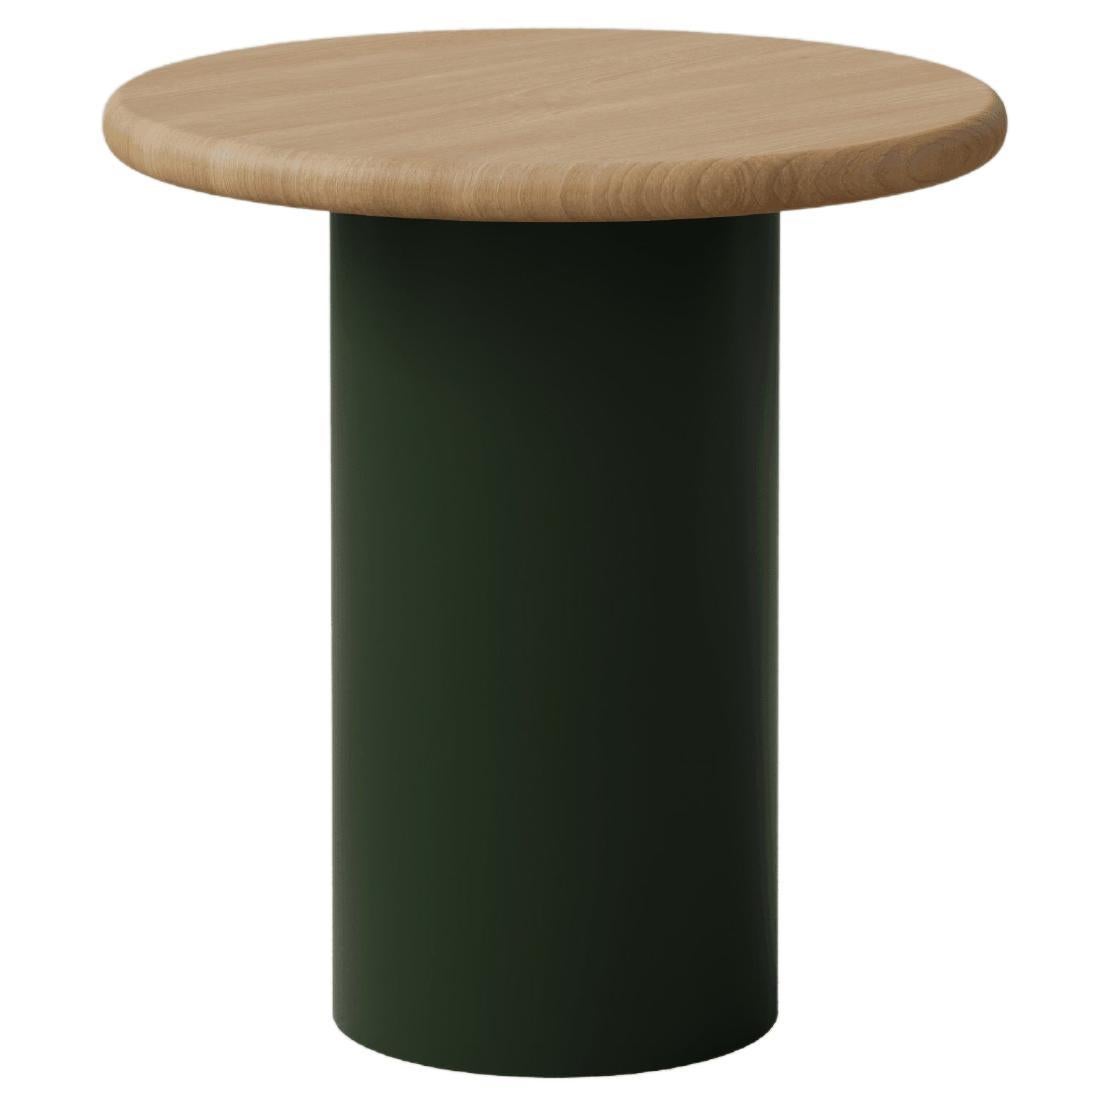 Table basse en forme de goutte d'eau, 400, chêne/vert mousse